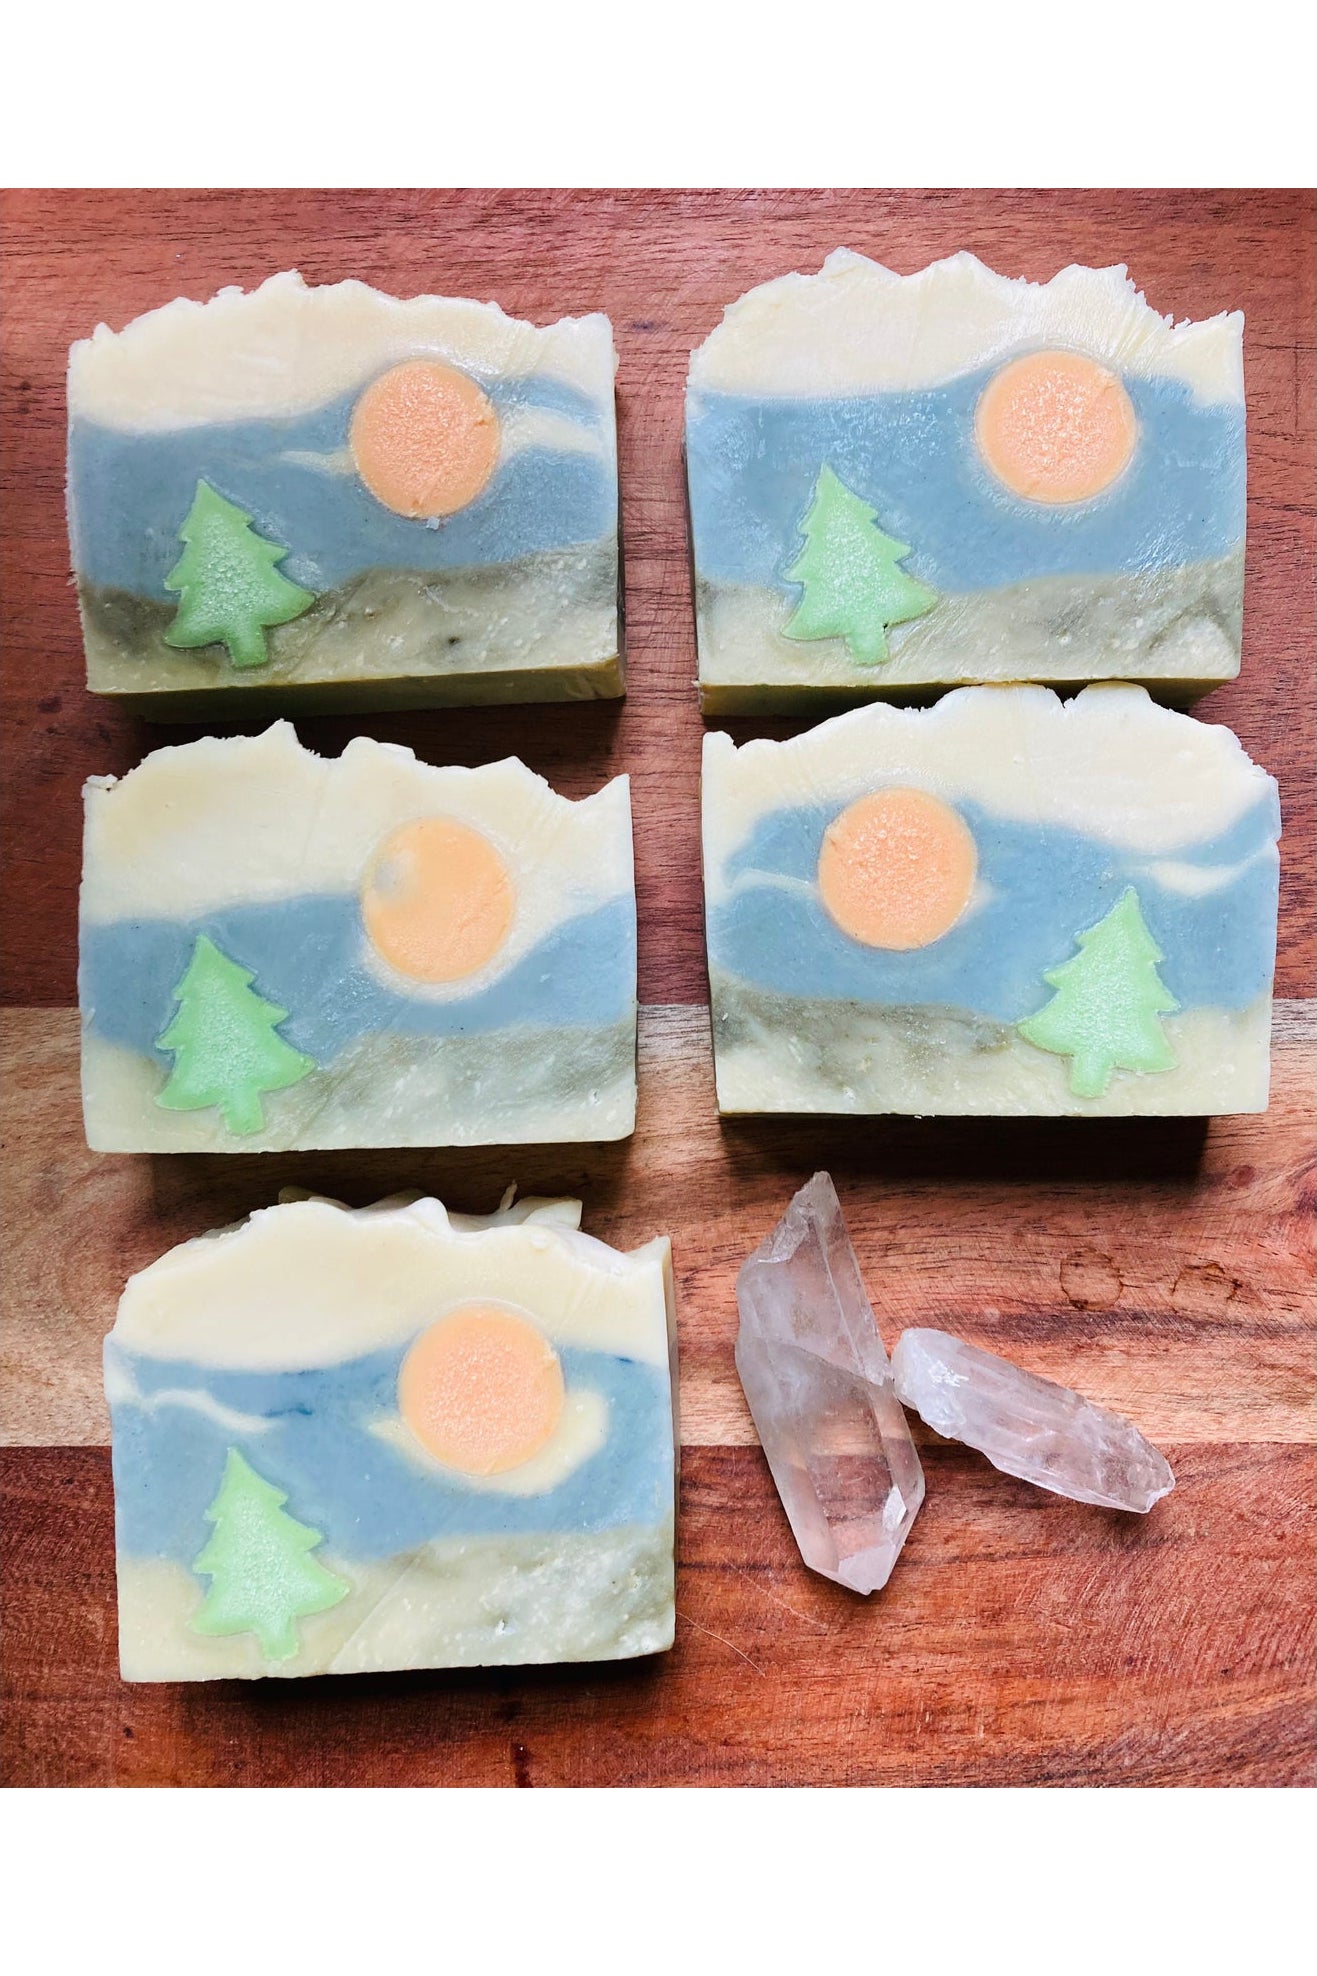 Specialty Soap~Happy Camper